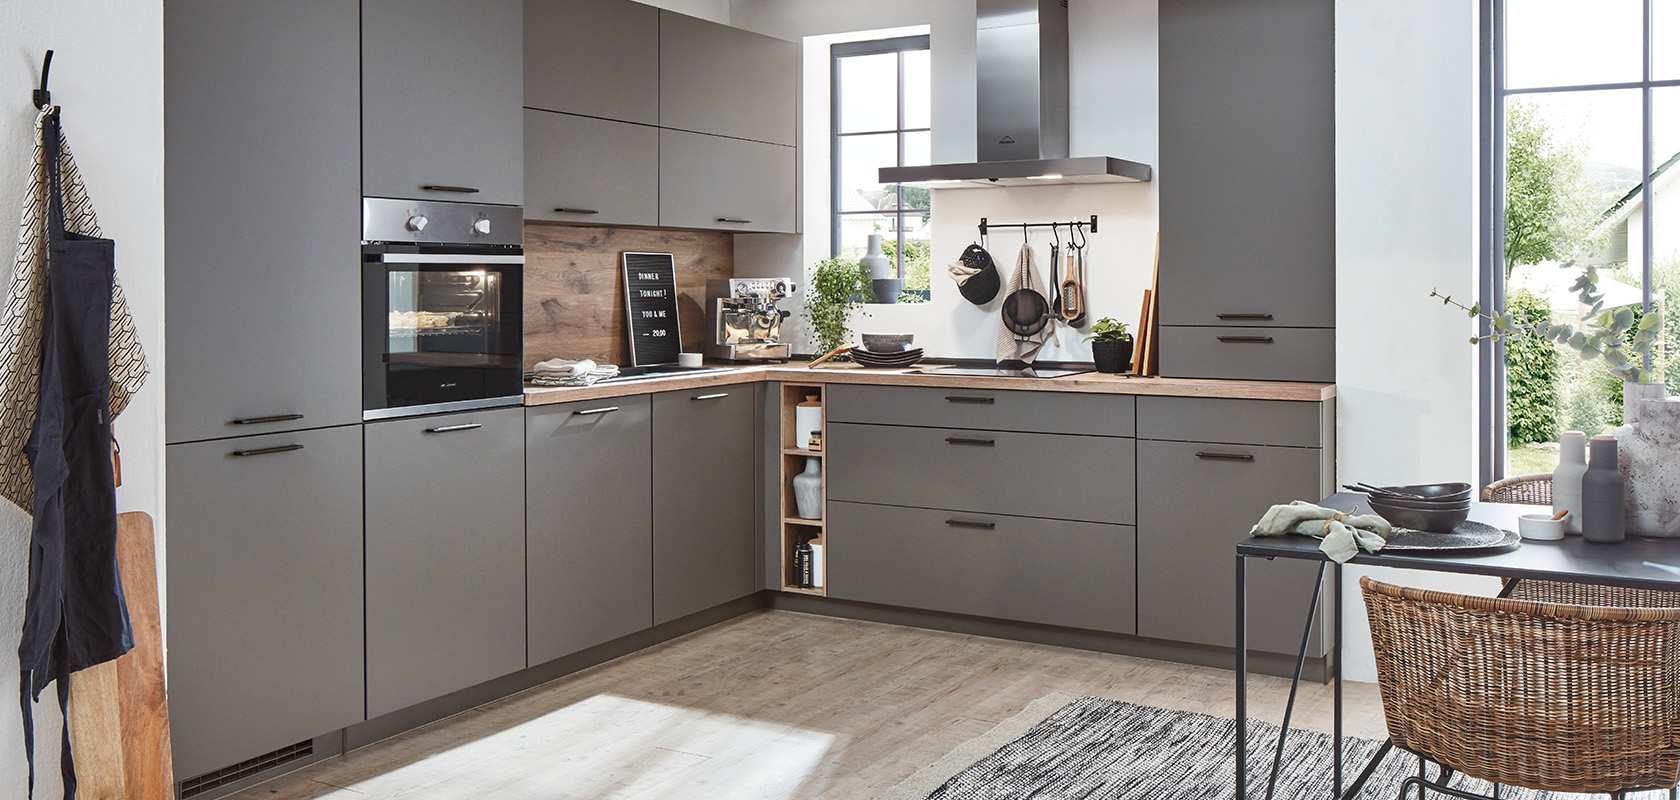 Současná kuchyně s šedými skříňkami, dřevěnými pracovními plochami a nerezovými spotřebiči, která předvádí minimalistický design a praktickou eleganci.